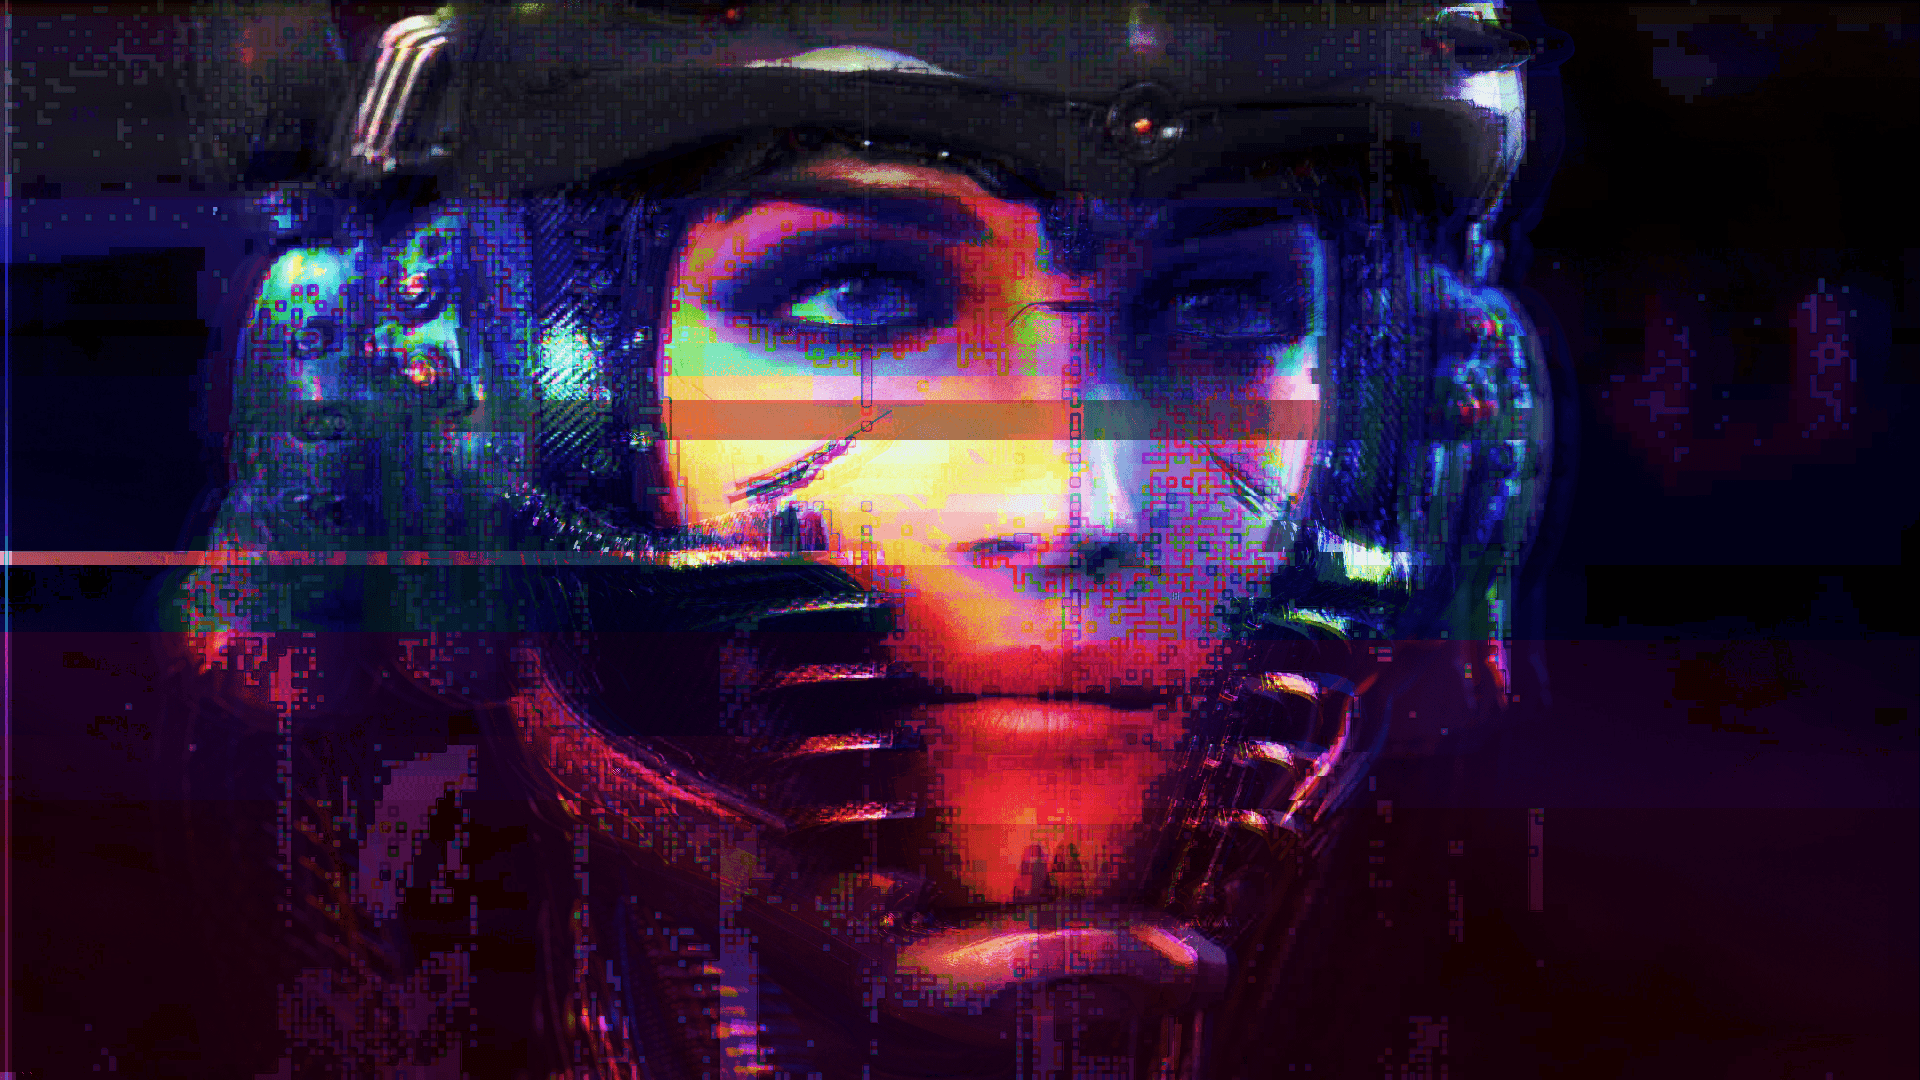 #cyberpunk, #glitch art wallpaper. General